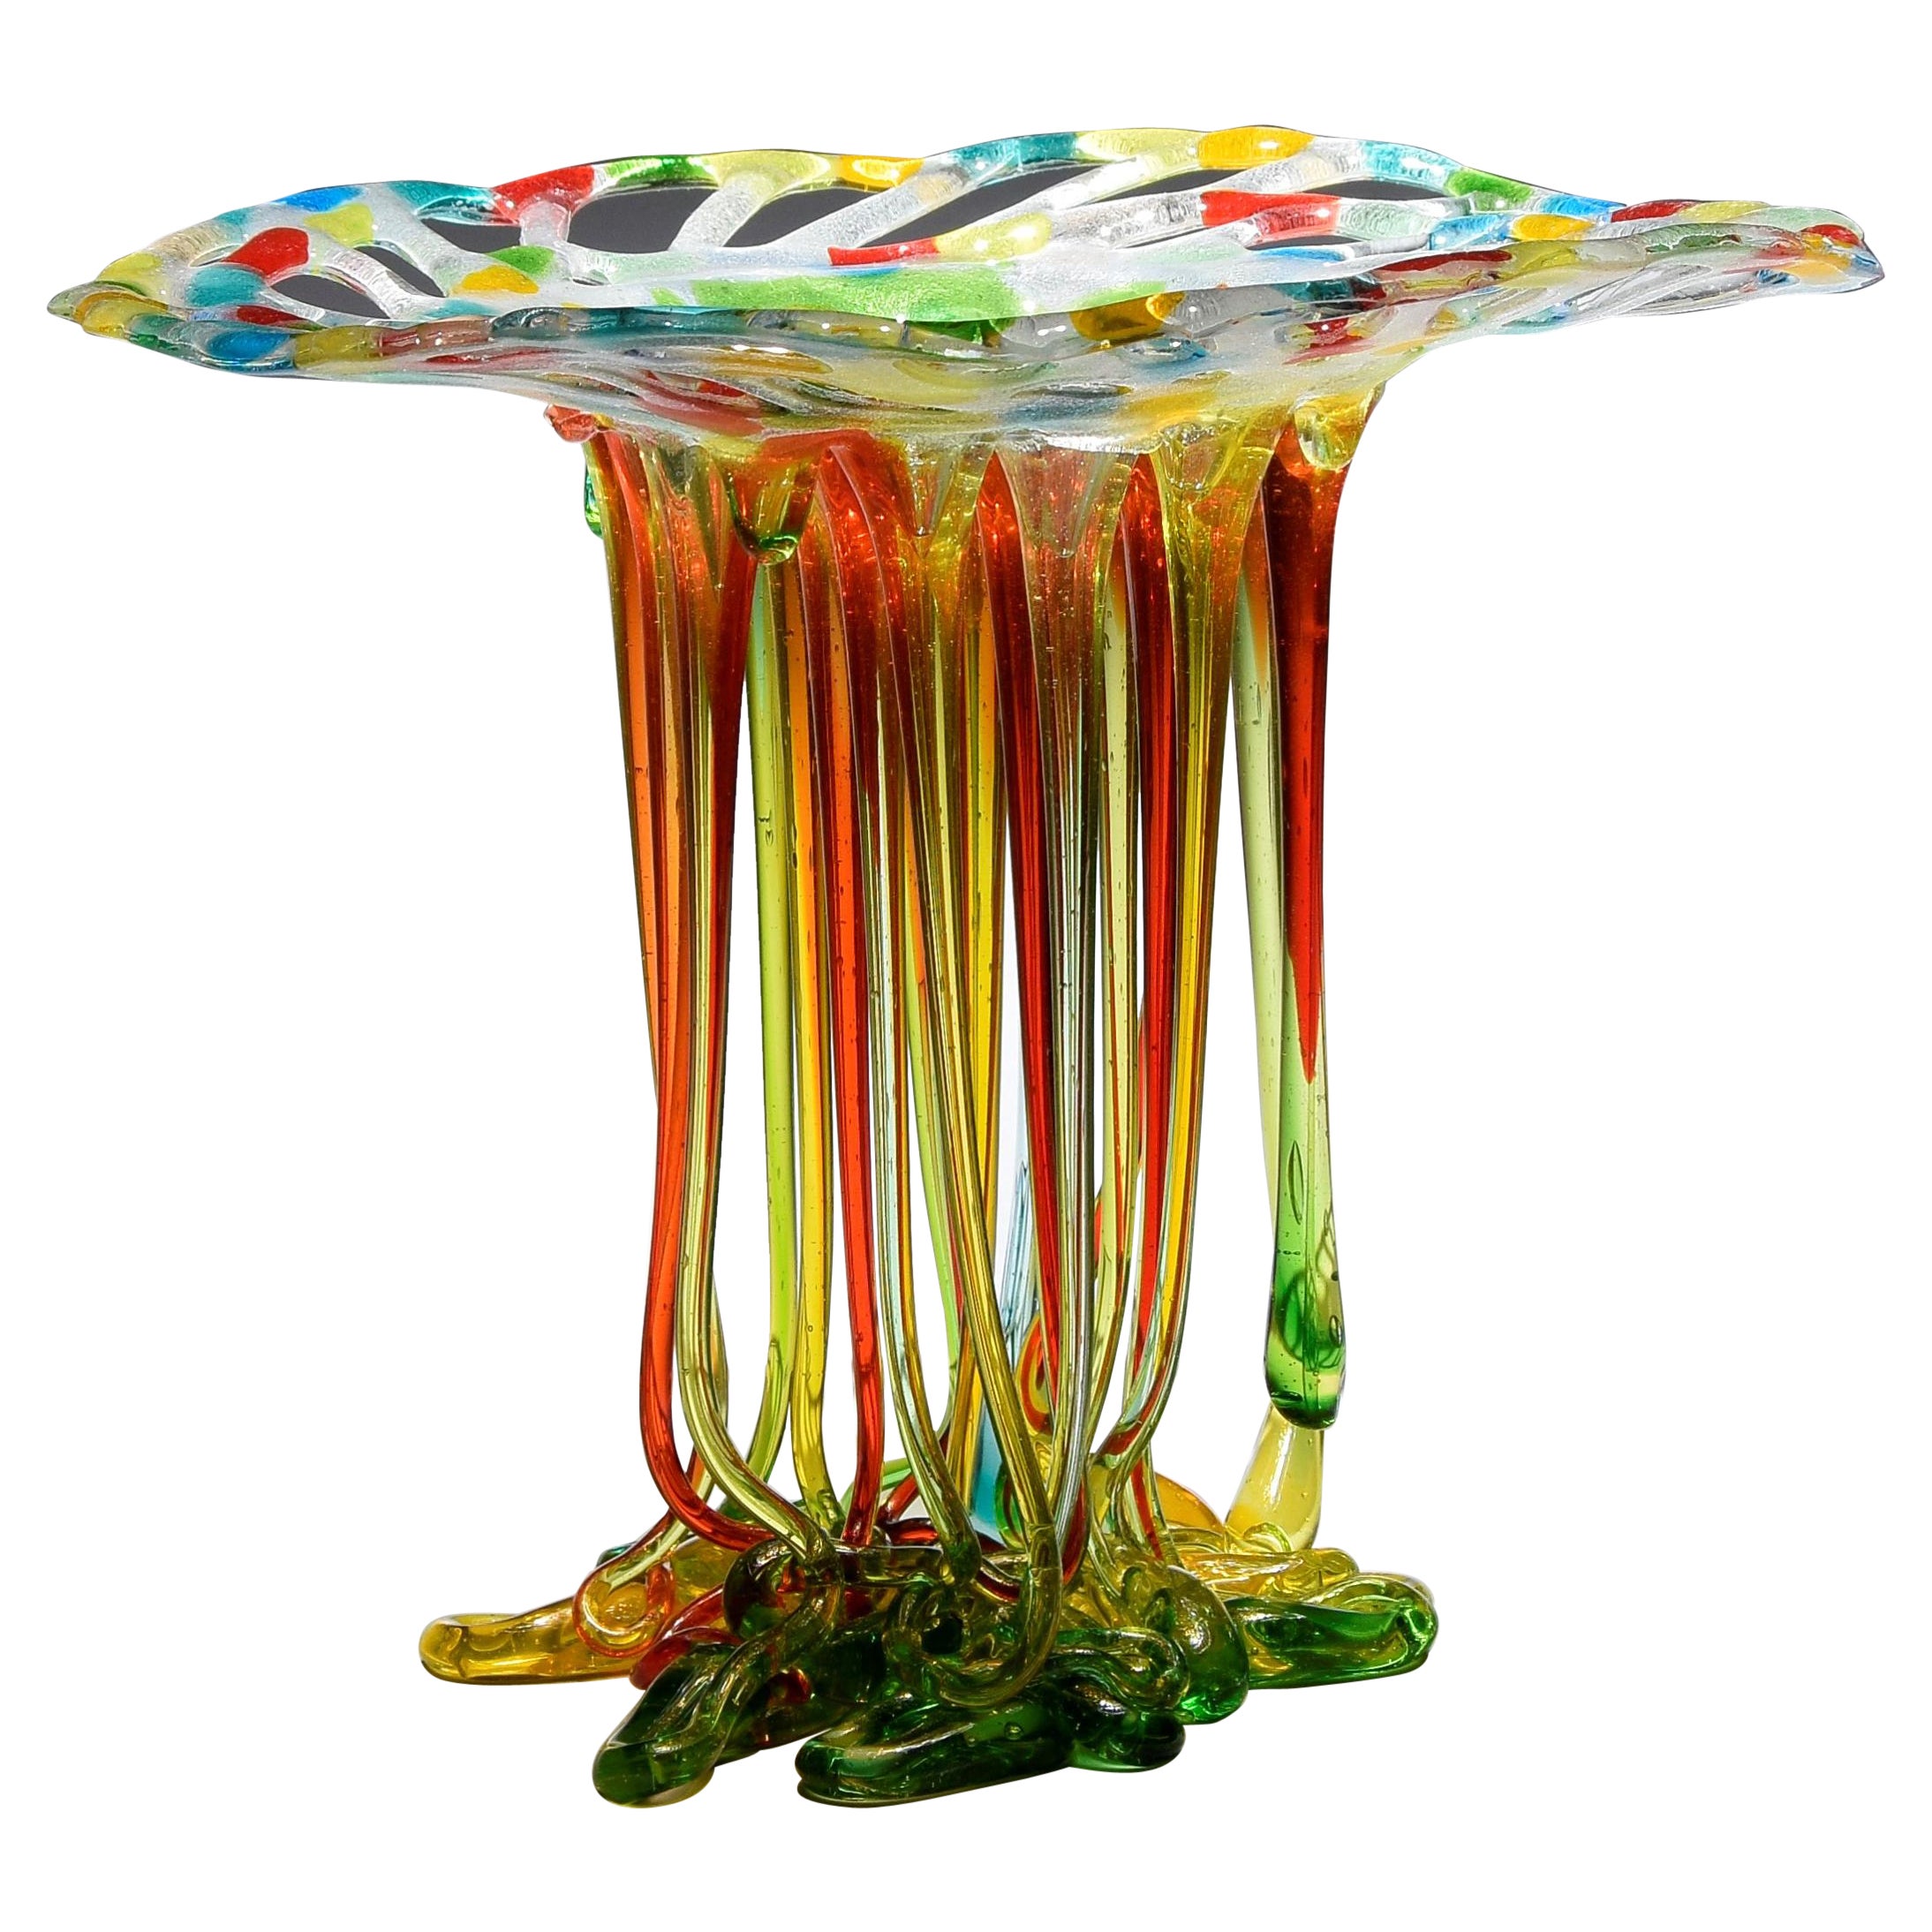 "Regenbogen", Murano Glas Tafelaufsatz, Handgemacht in Italien, Einzigartiges Design, 2022